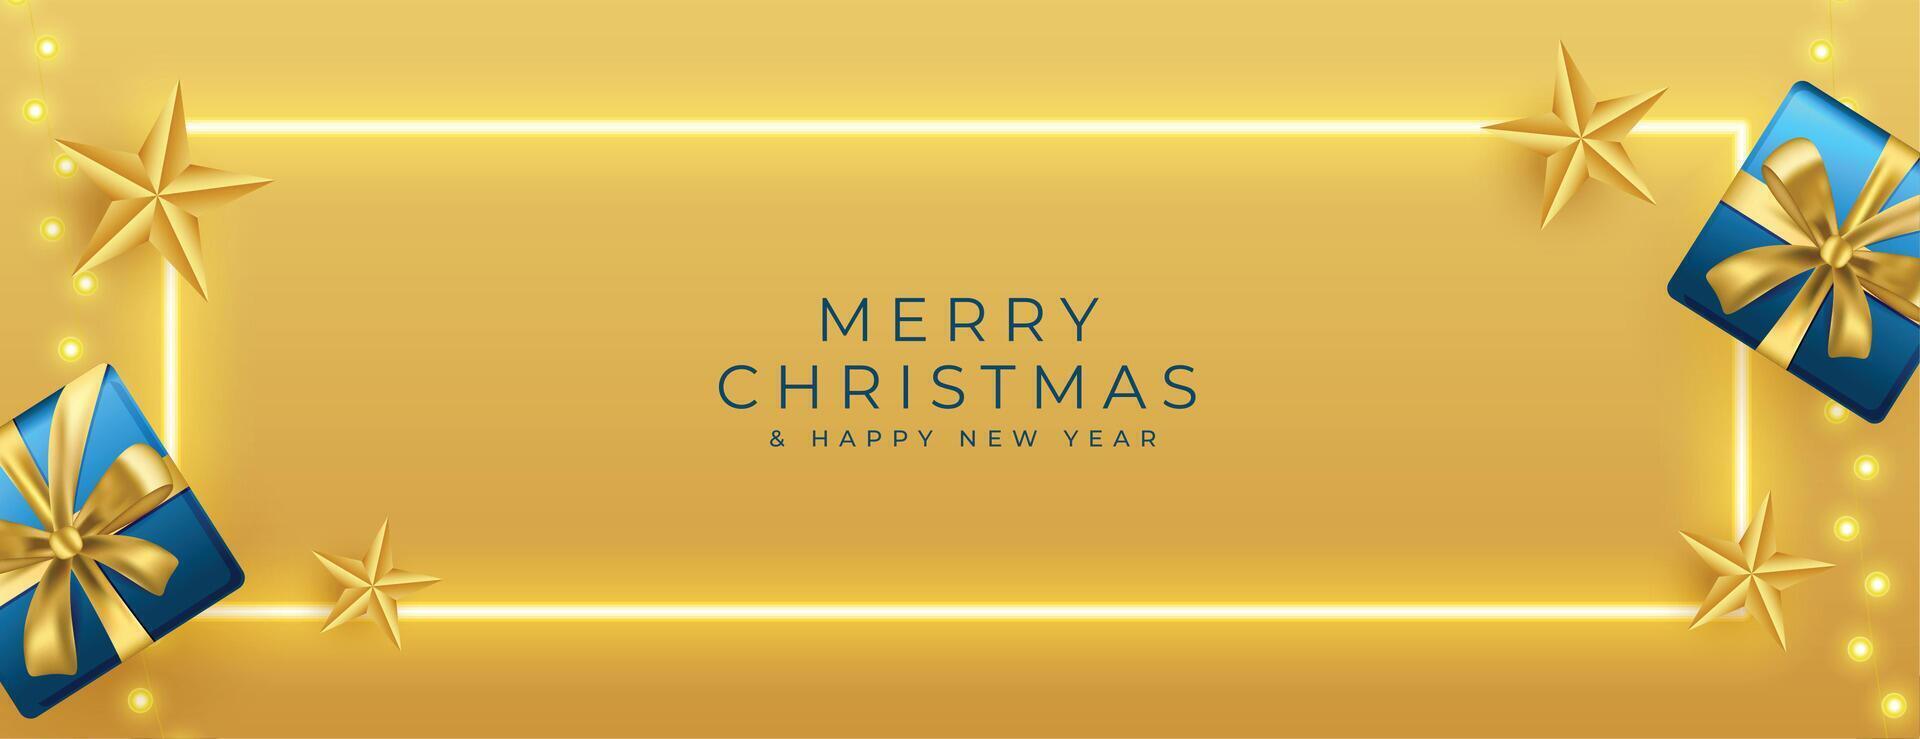 brillante alegre Navidad dorado bandera con caja de regalo y luces vector